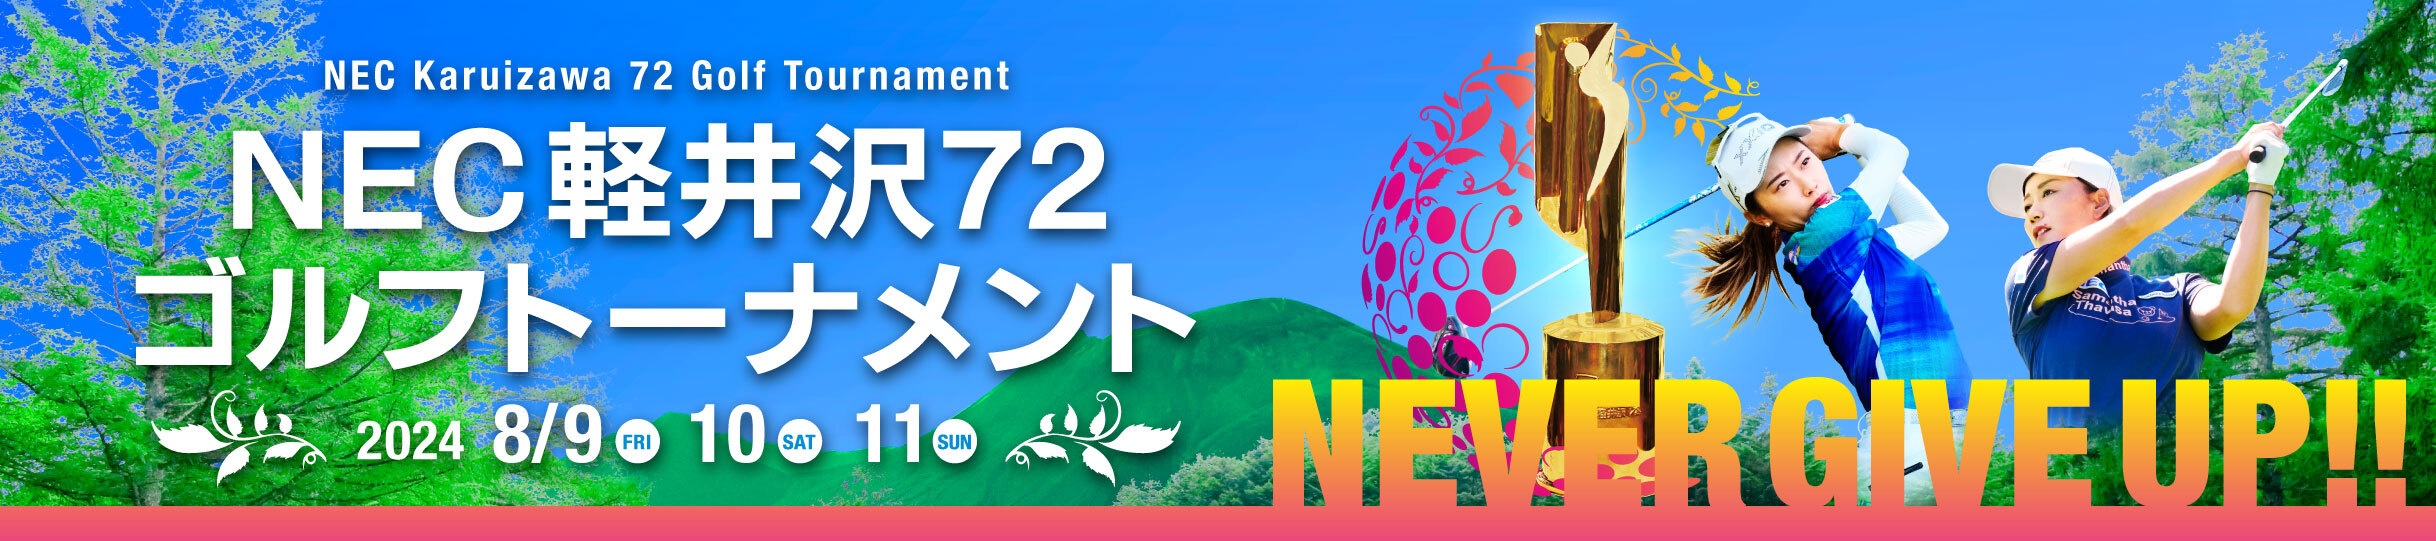 『NEC軽井沢72ゴルフトーナメント』チケット発売中